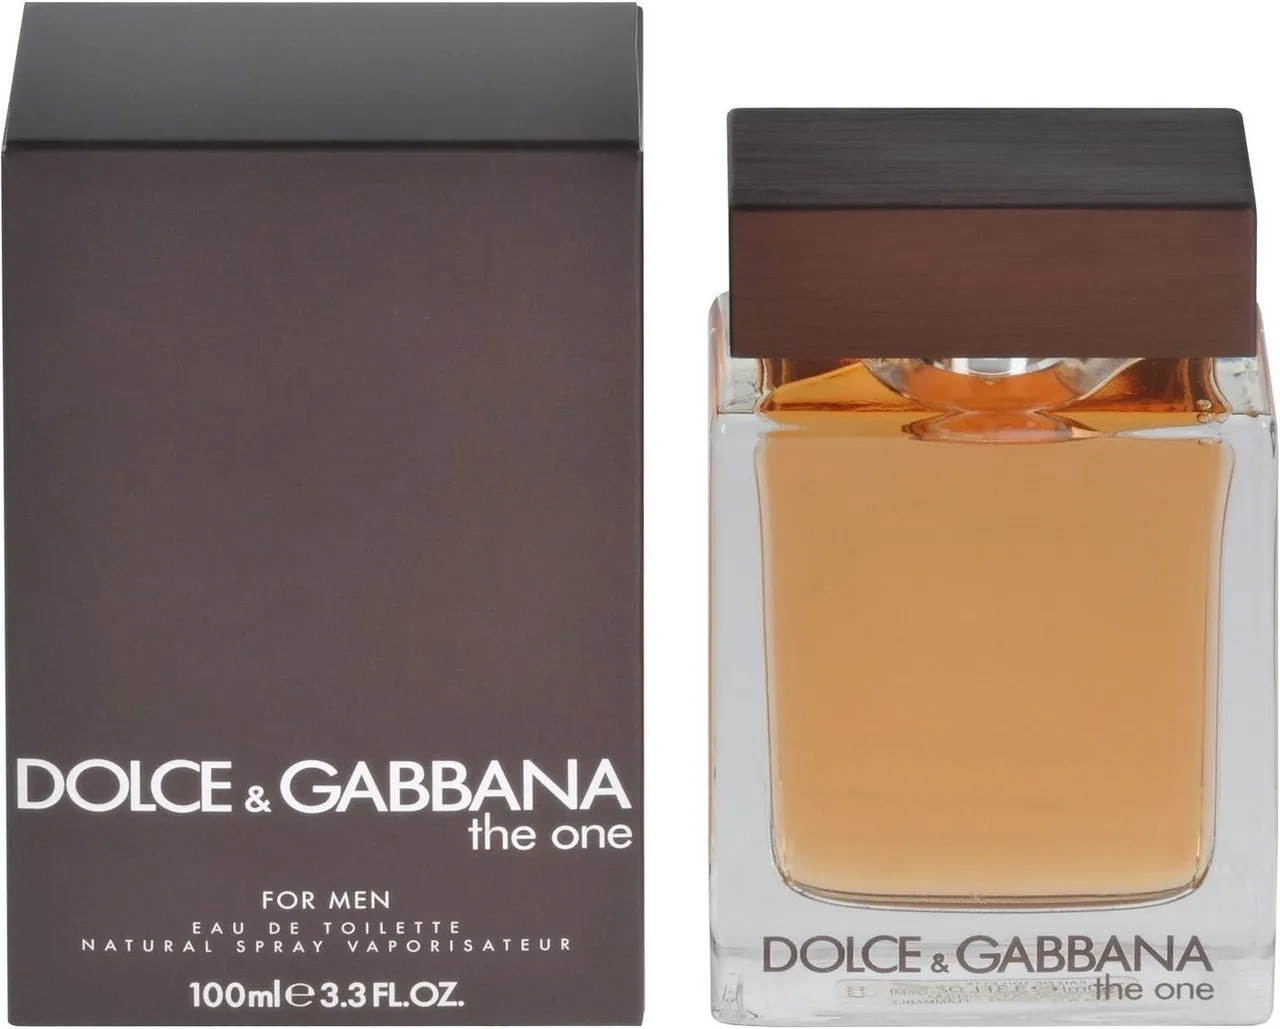 DOLCE & GABBANA Eau de Toilette The One for Men, Männerduft, EdT, Parfum, for him